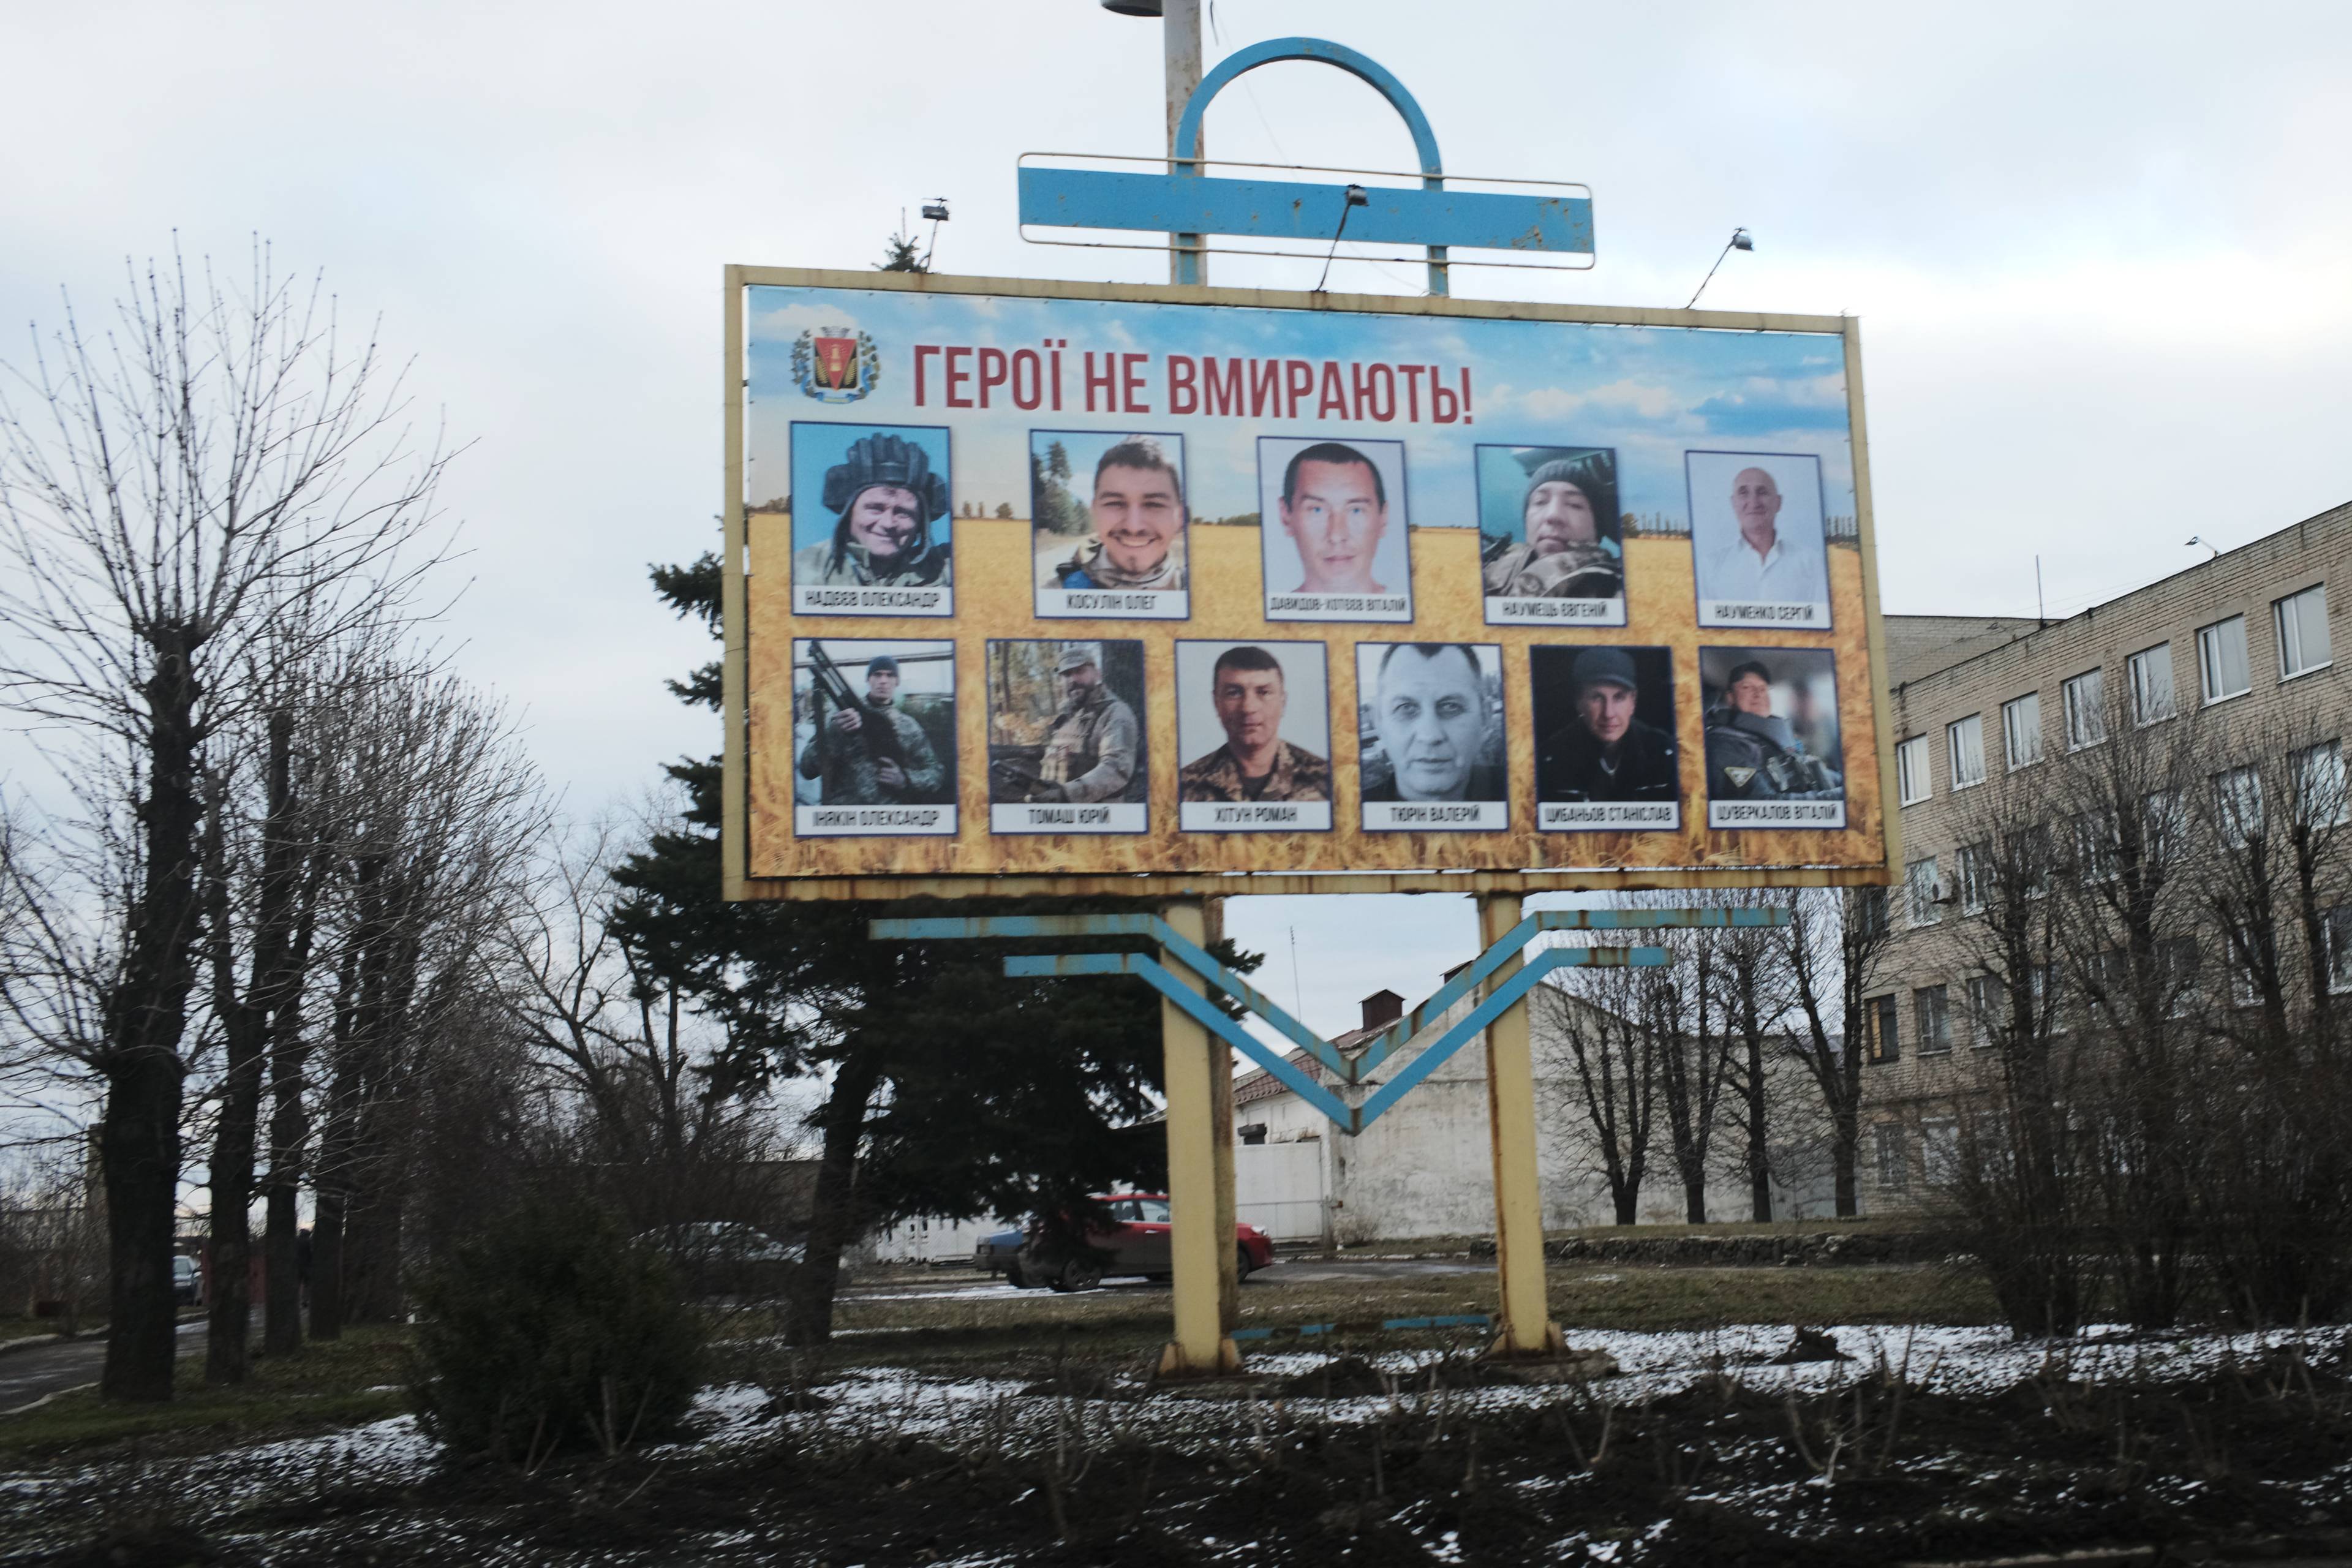 Pokrovsk duże miasto na drodze do Awdiiwki-zdjęcia poległych  żołnierzy,widnieją co kilkadziesiąt metrów na bilbordach